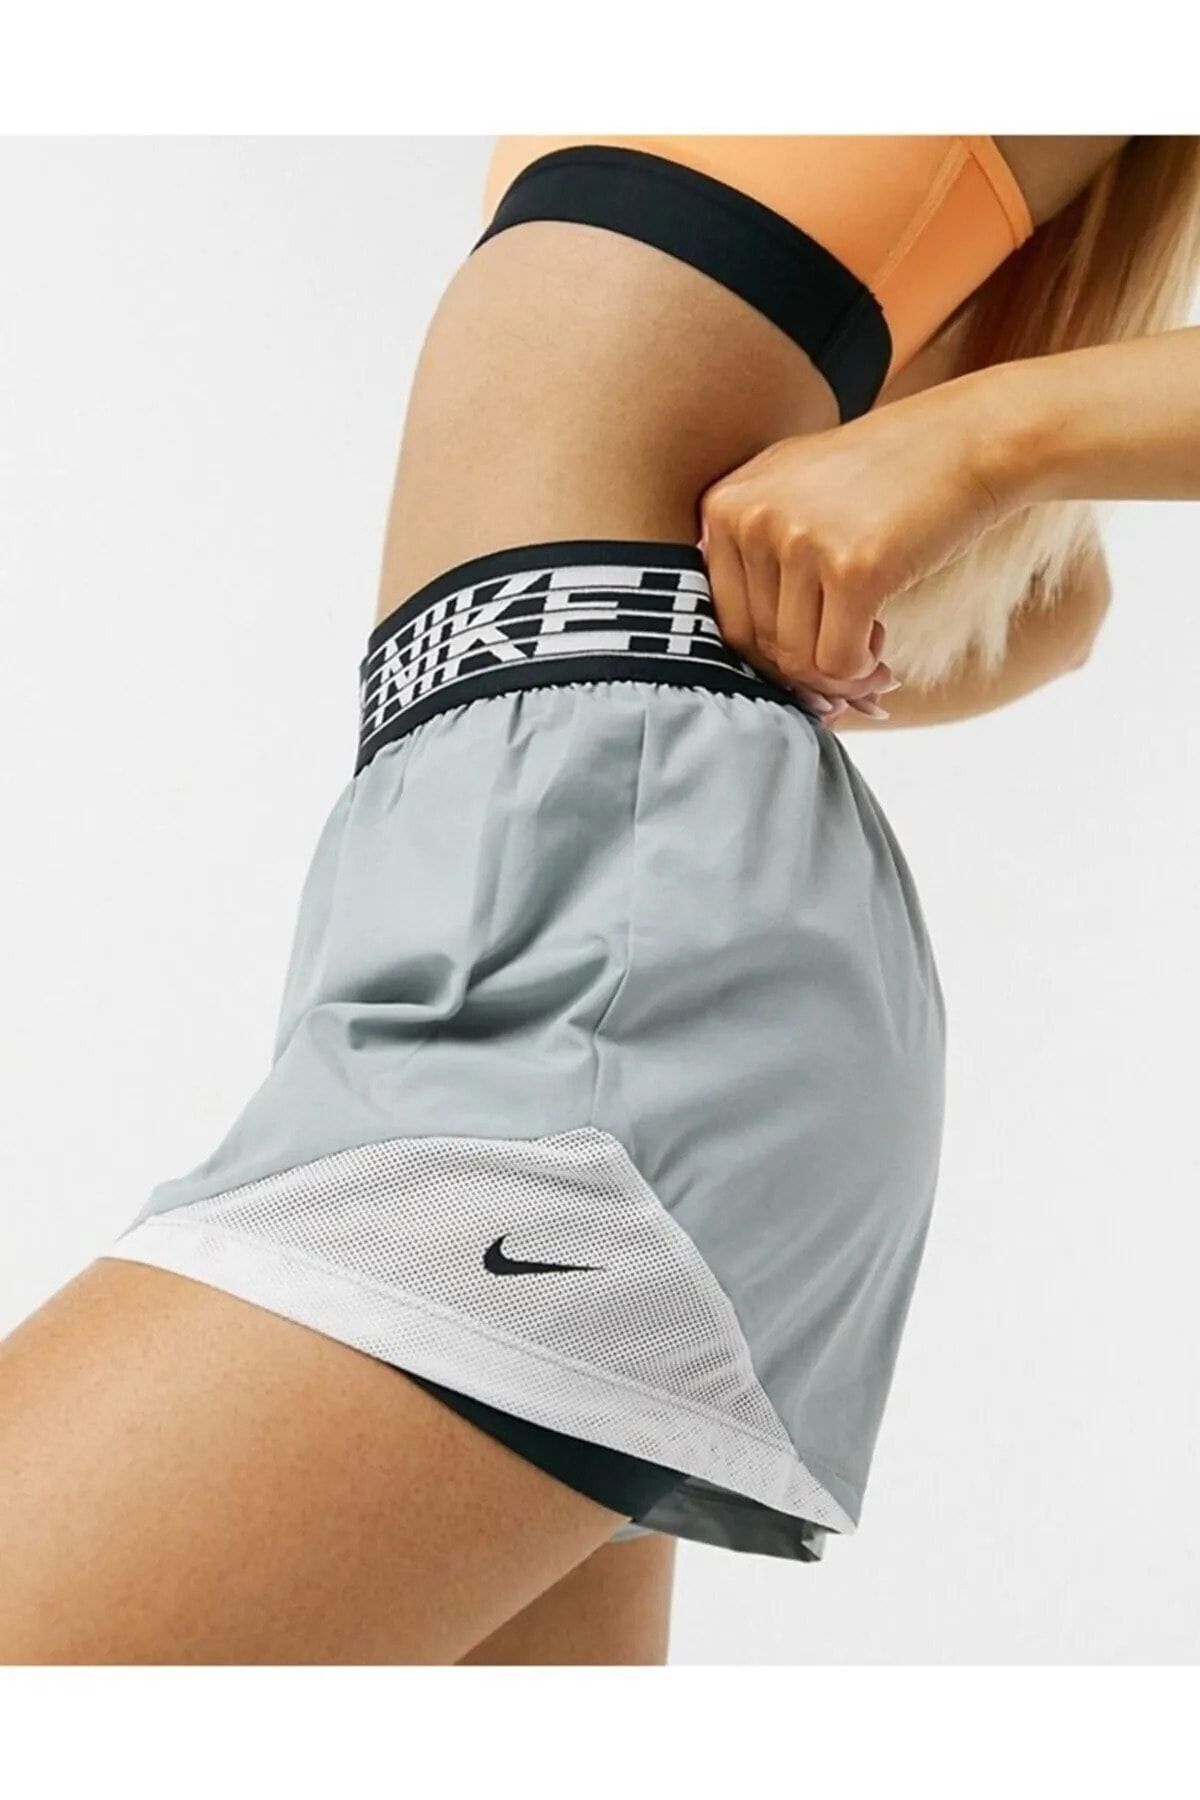 Nike Pro Flex Women's 2-in-1 Leggings Shorts